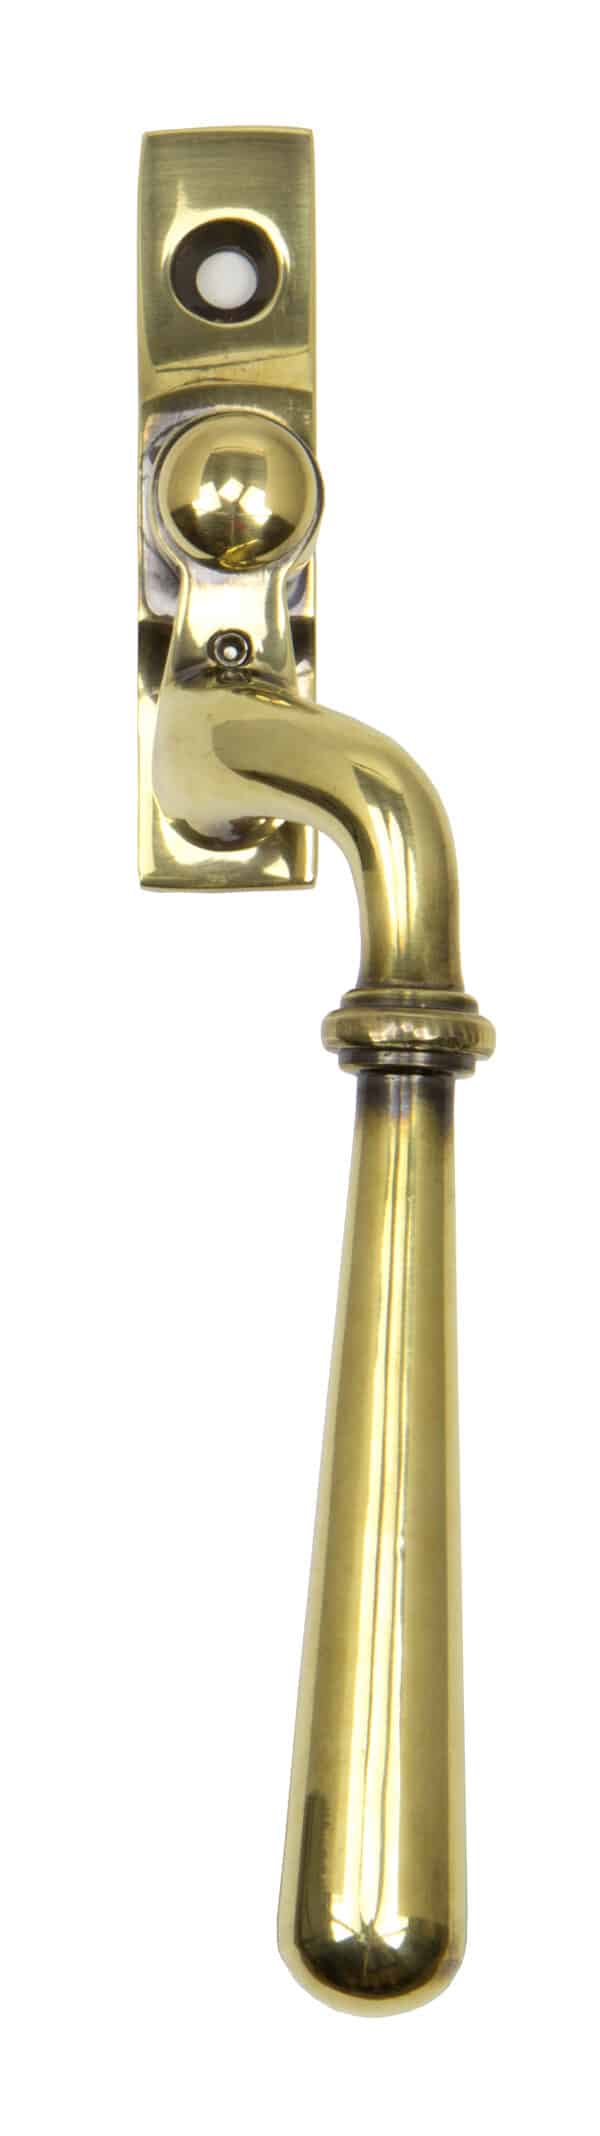 Aged Brass Newbury Espag - RH 2